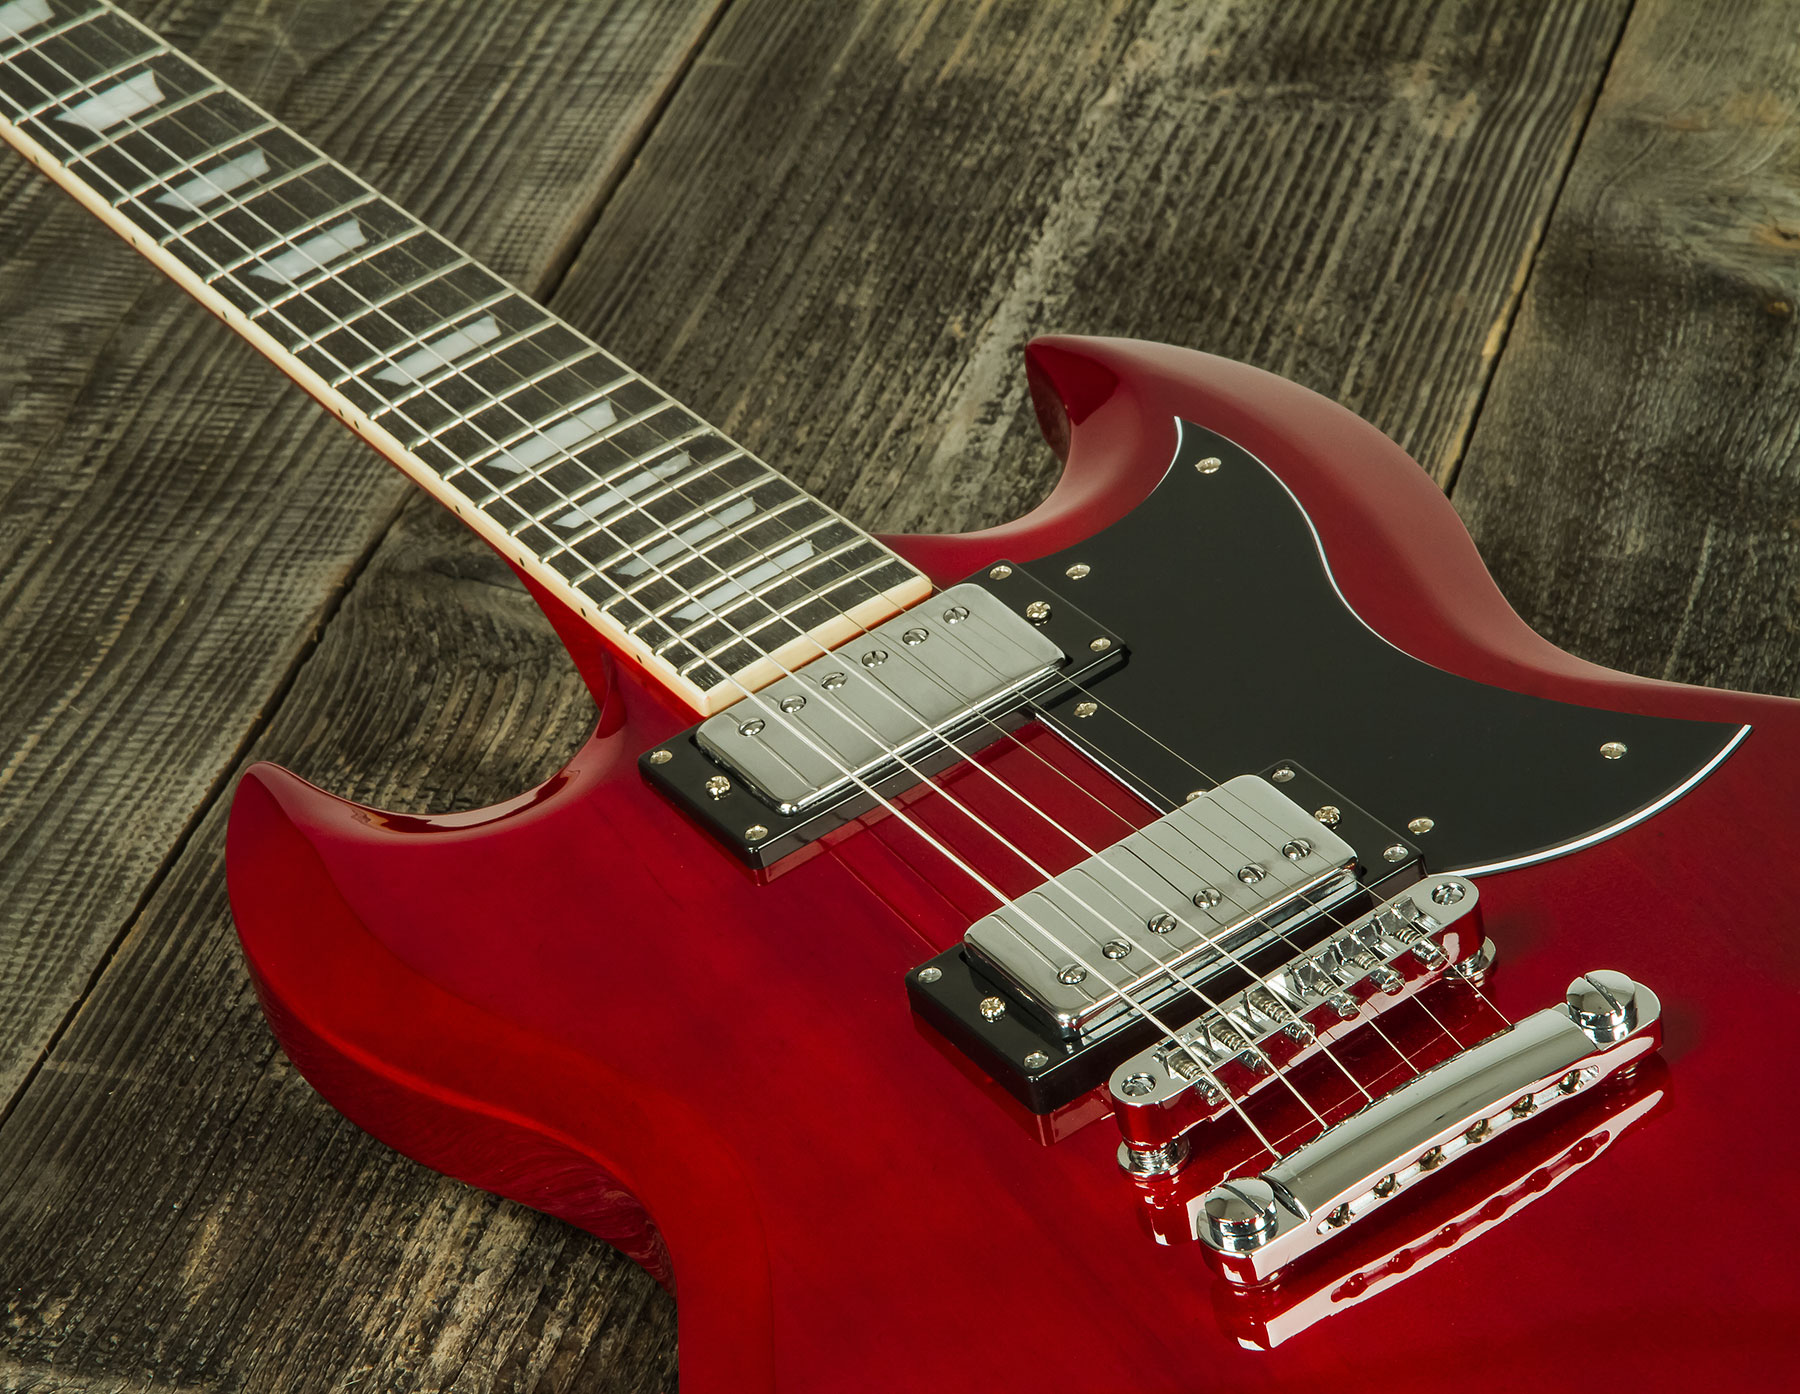 Eastone Sdc70 Hh Ht Pur - Red - Guitarra eléctrica de doble corte. - Variation 3